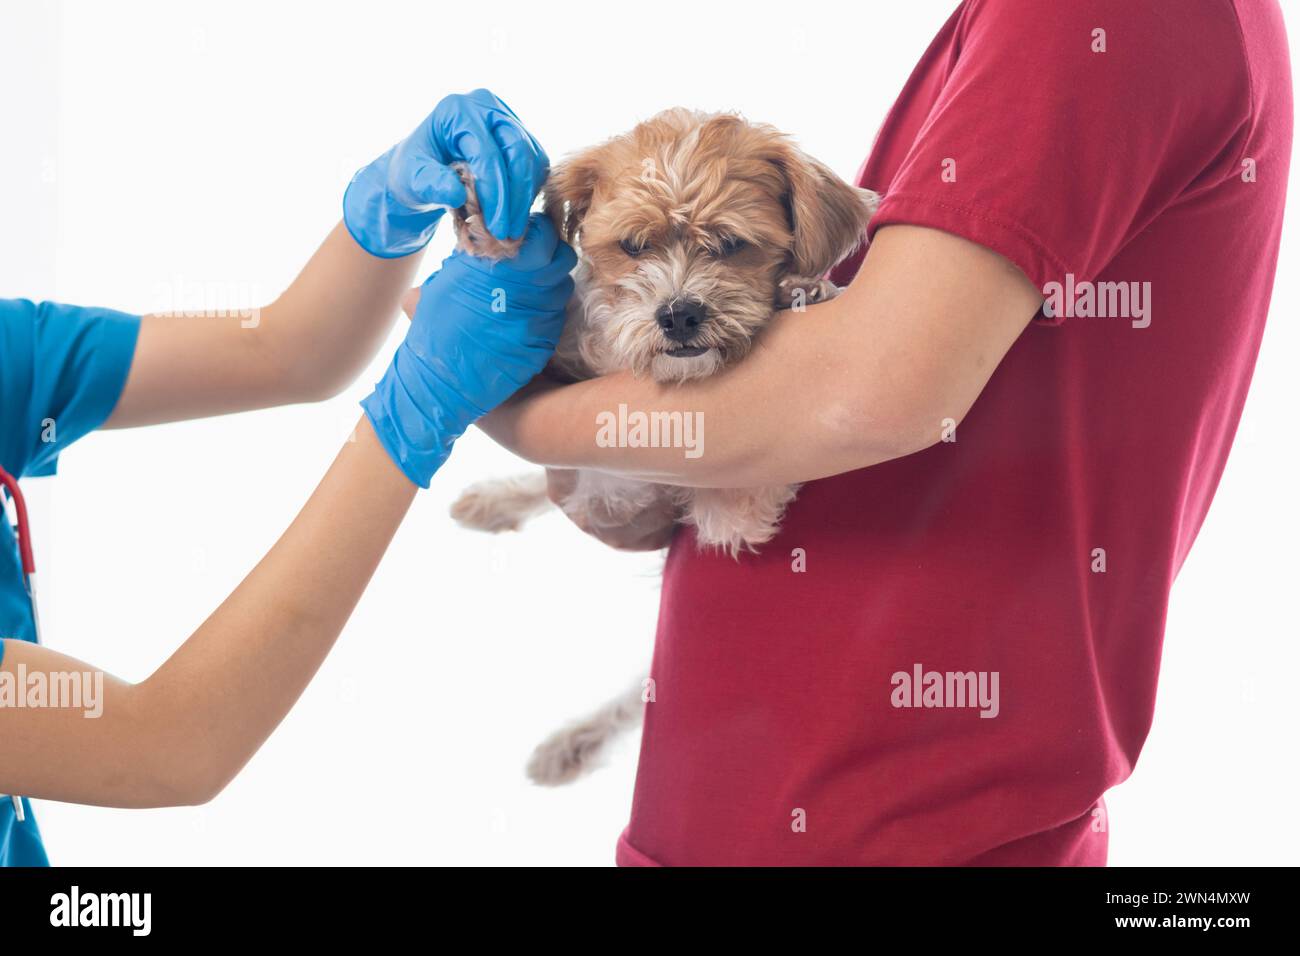 Tierärzte führen jährliche Kontrollen an Hunden durch, um mögliche Krankheiten zu suchen und sie schnell zu behandeln, um die Gesundheit des Haustiers sicherzustellen. Tierarzt i Stockfoto